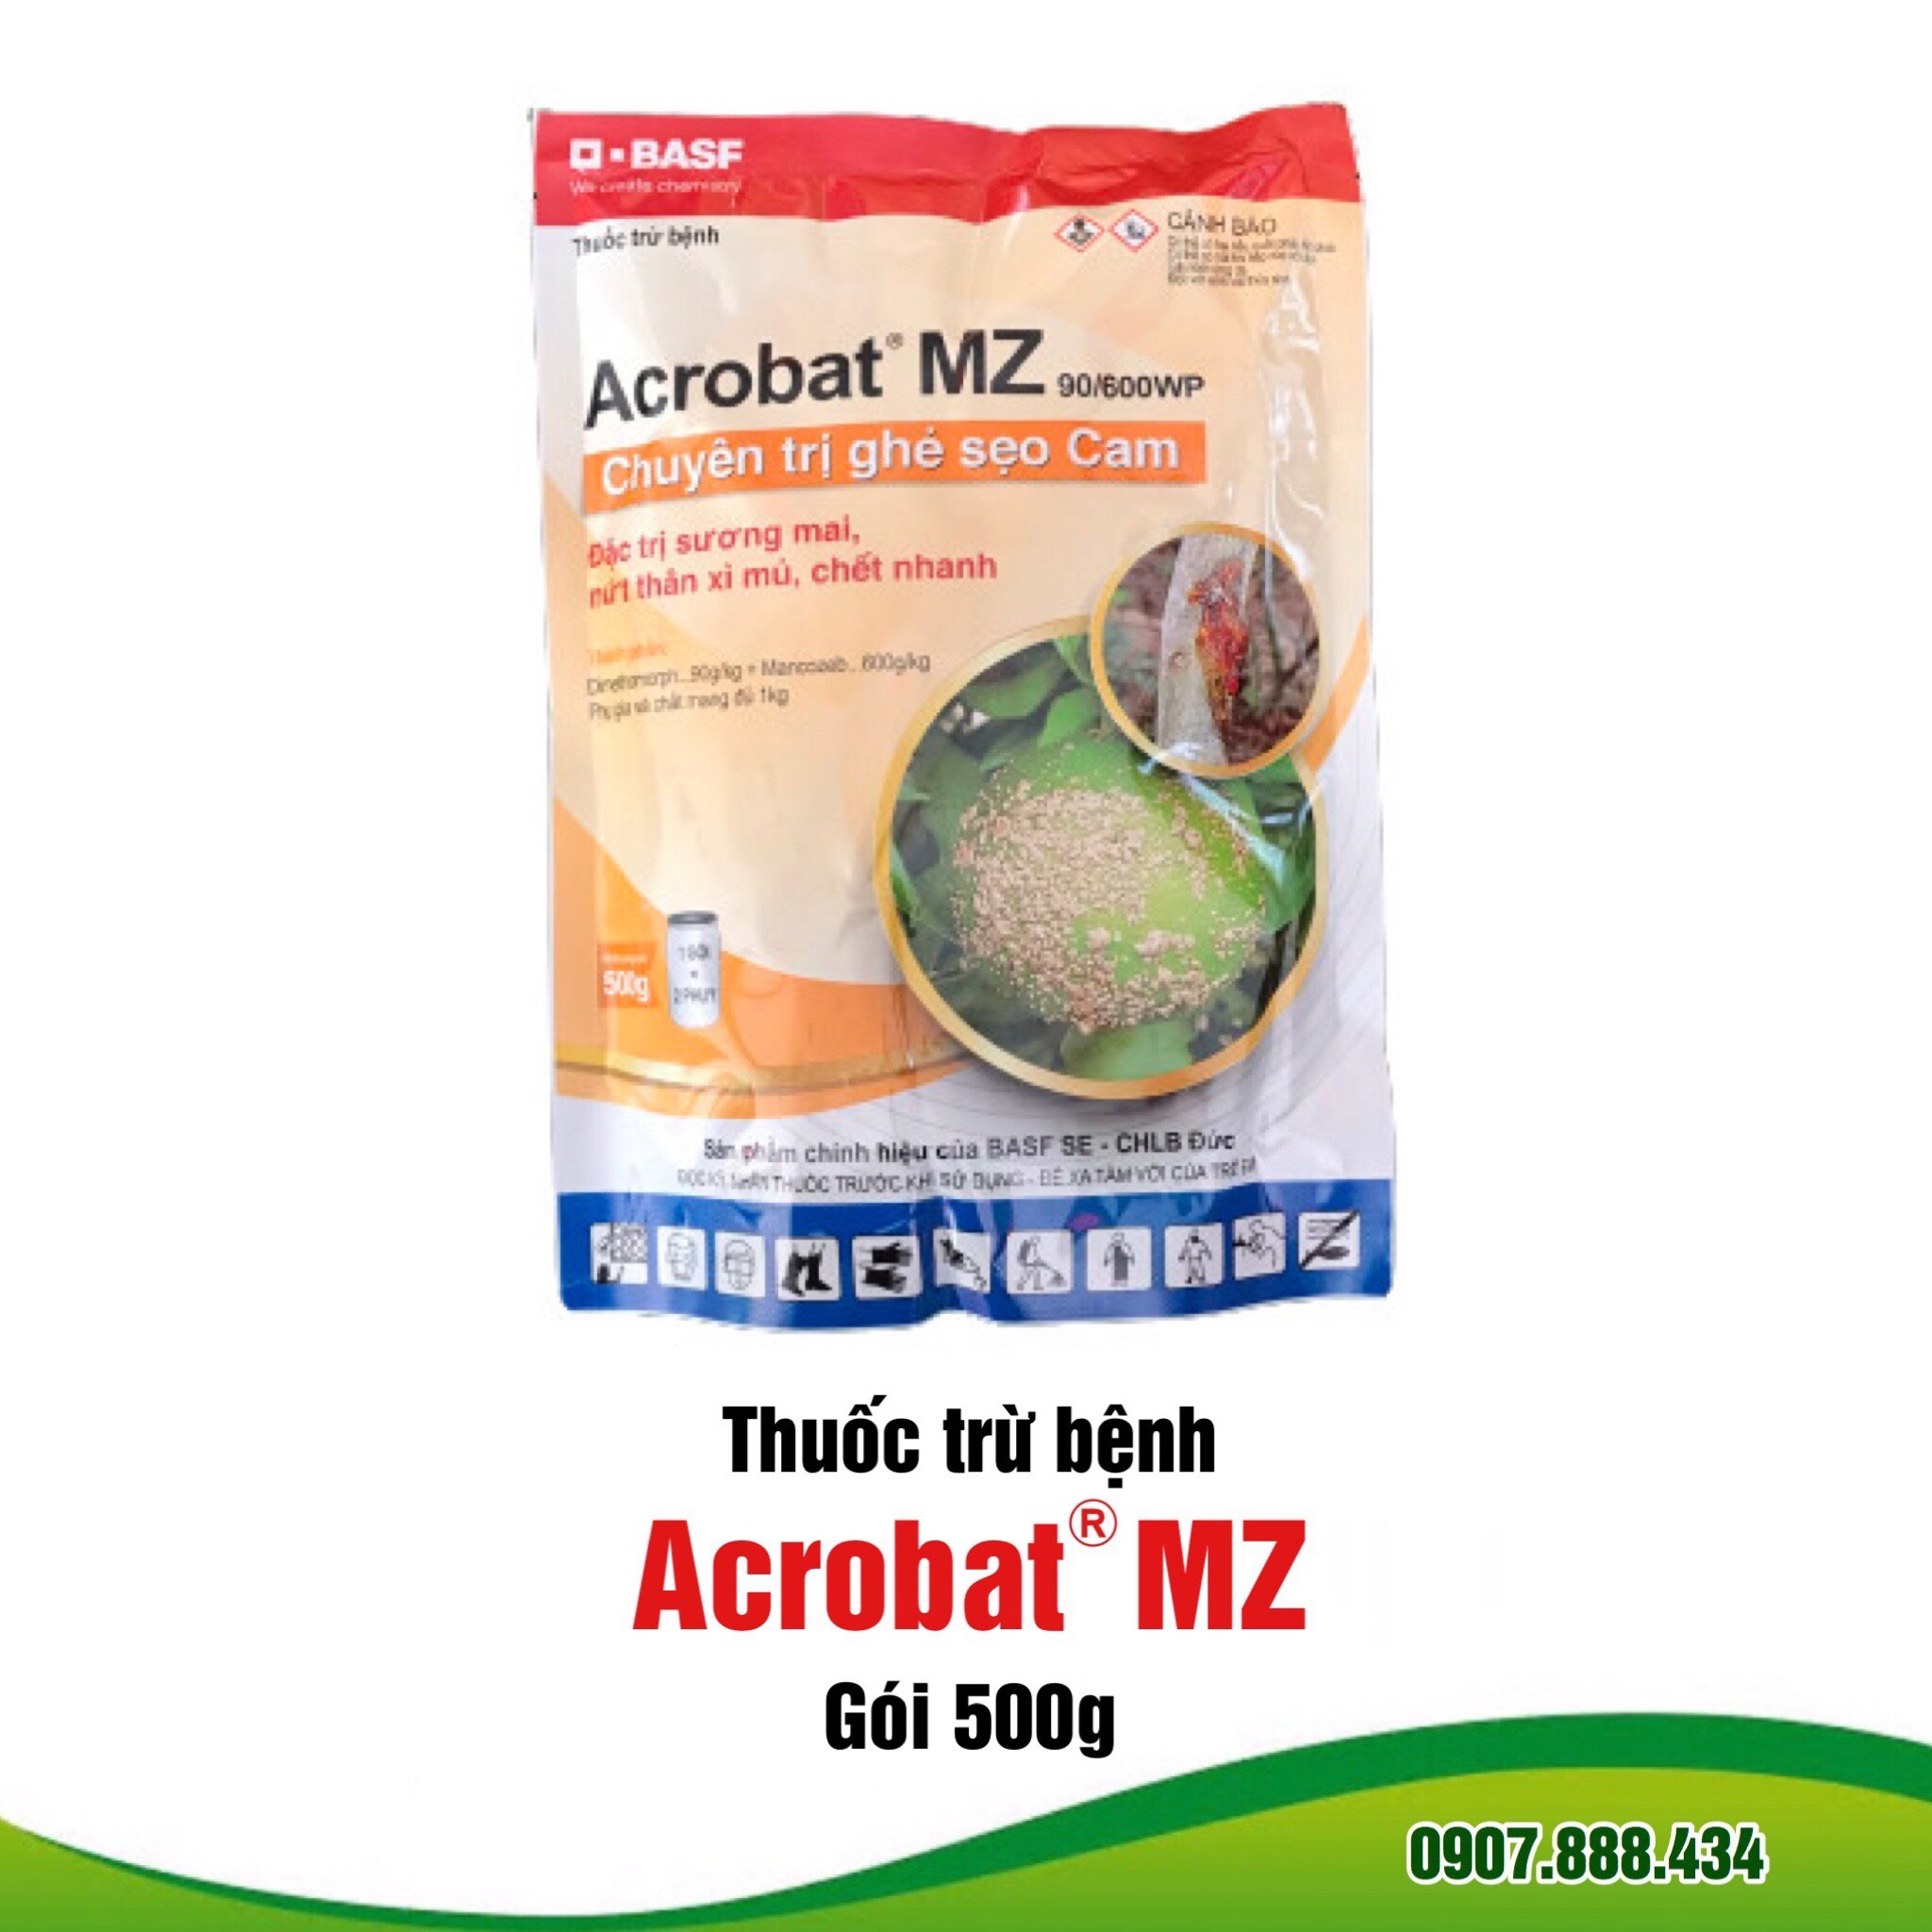 Thuốc trừ bệnh Acrobat MZ - Gói 500g